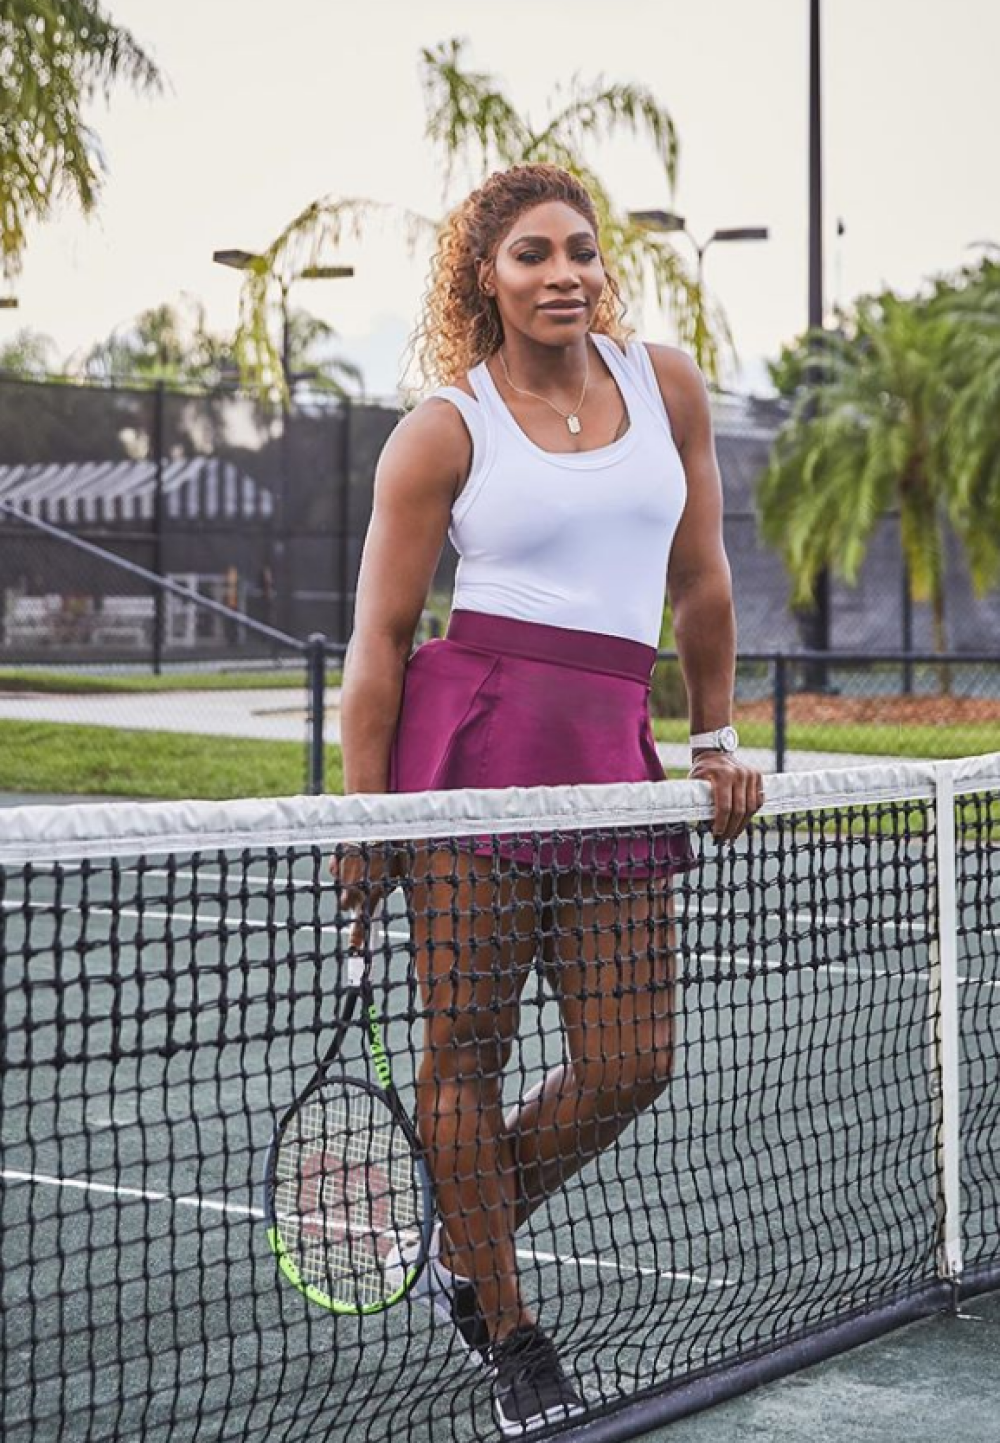 Cea mai tare echipă. Imaginile cu Serena Williams și fiica ei pe terenul de tenis i-au emoționat pe toți - Imaginea 3